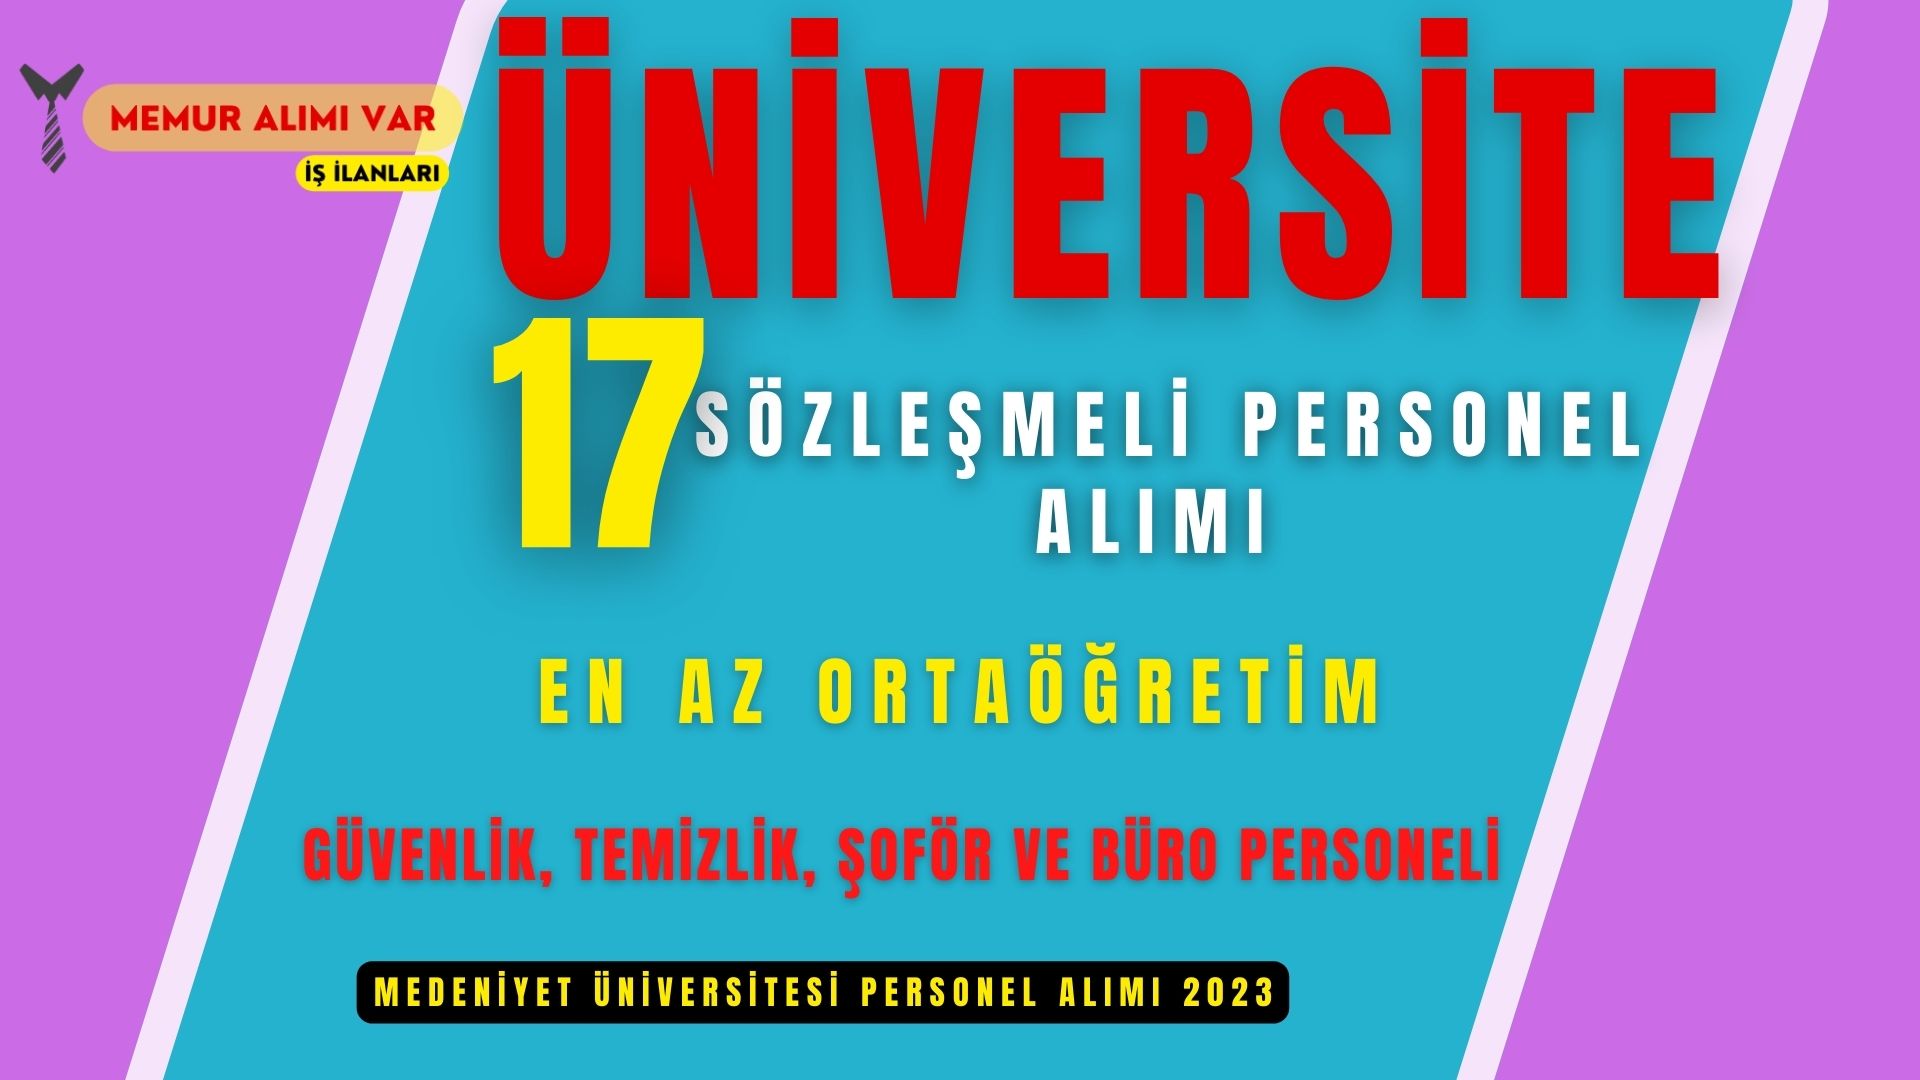 İstanbul Medeniyet Üniversitesi 17 Personel Alım İlanı 2023 Başvuru Formu